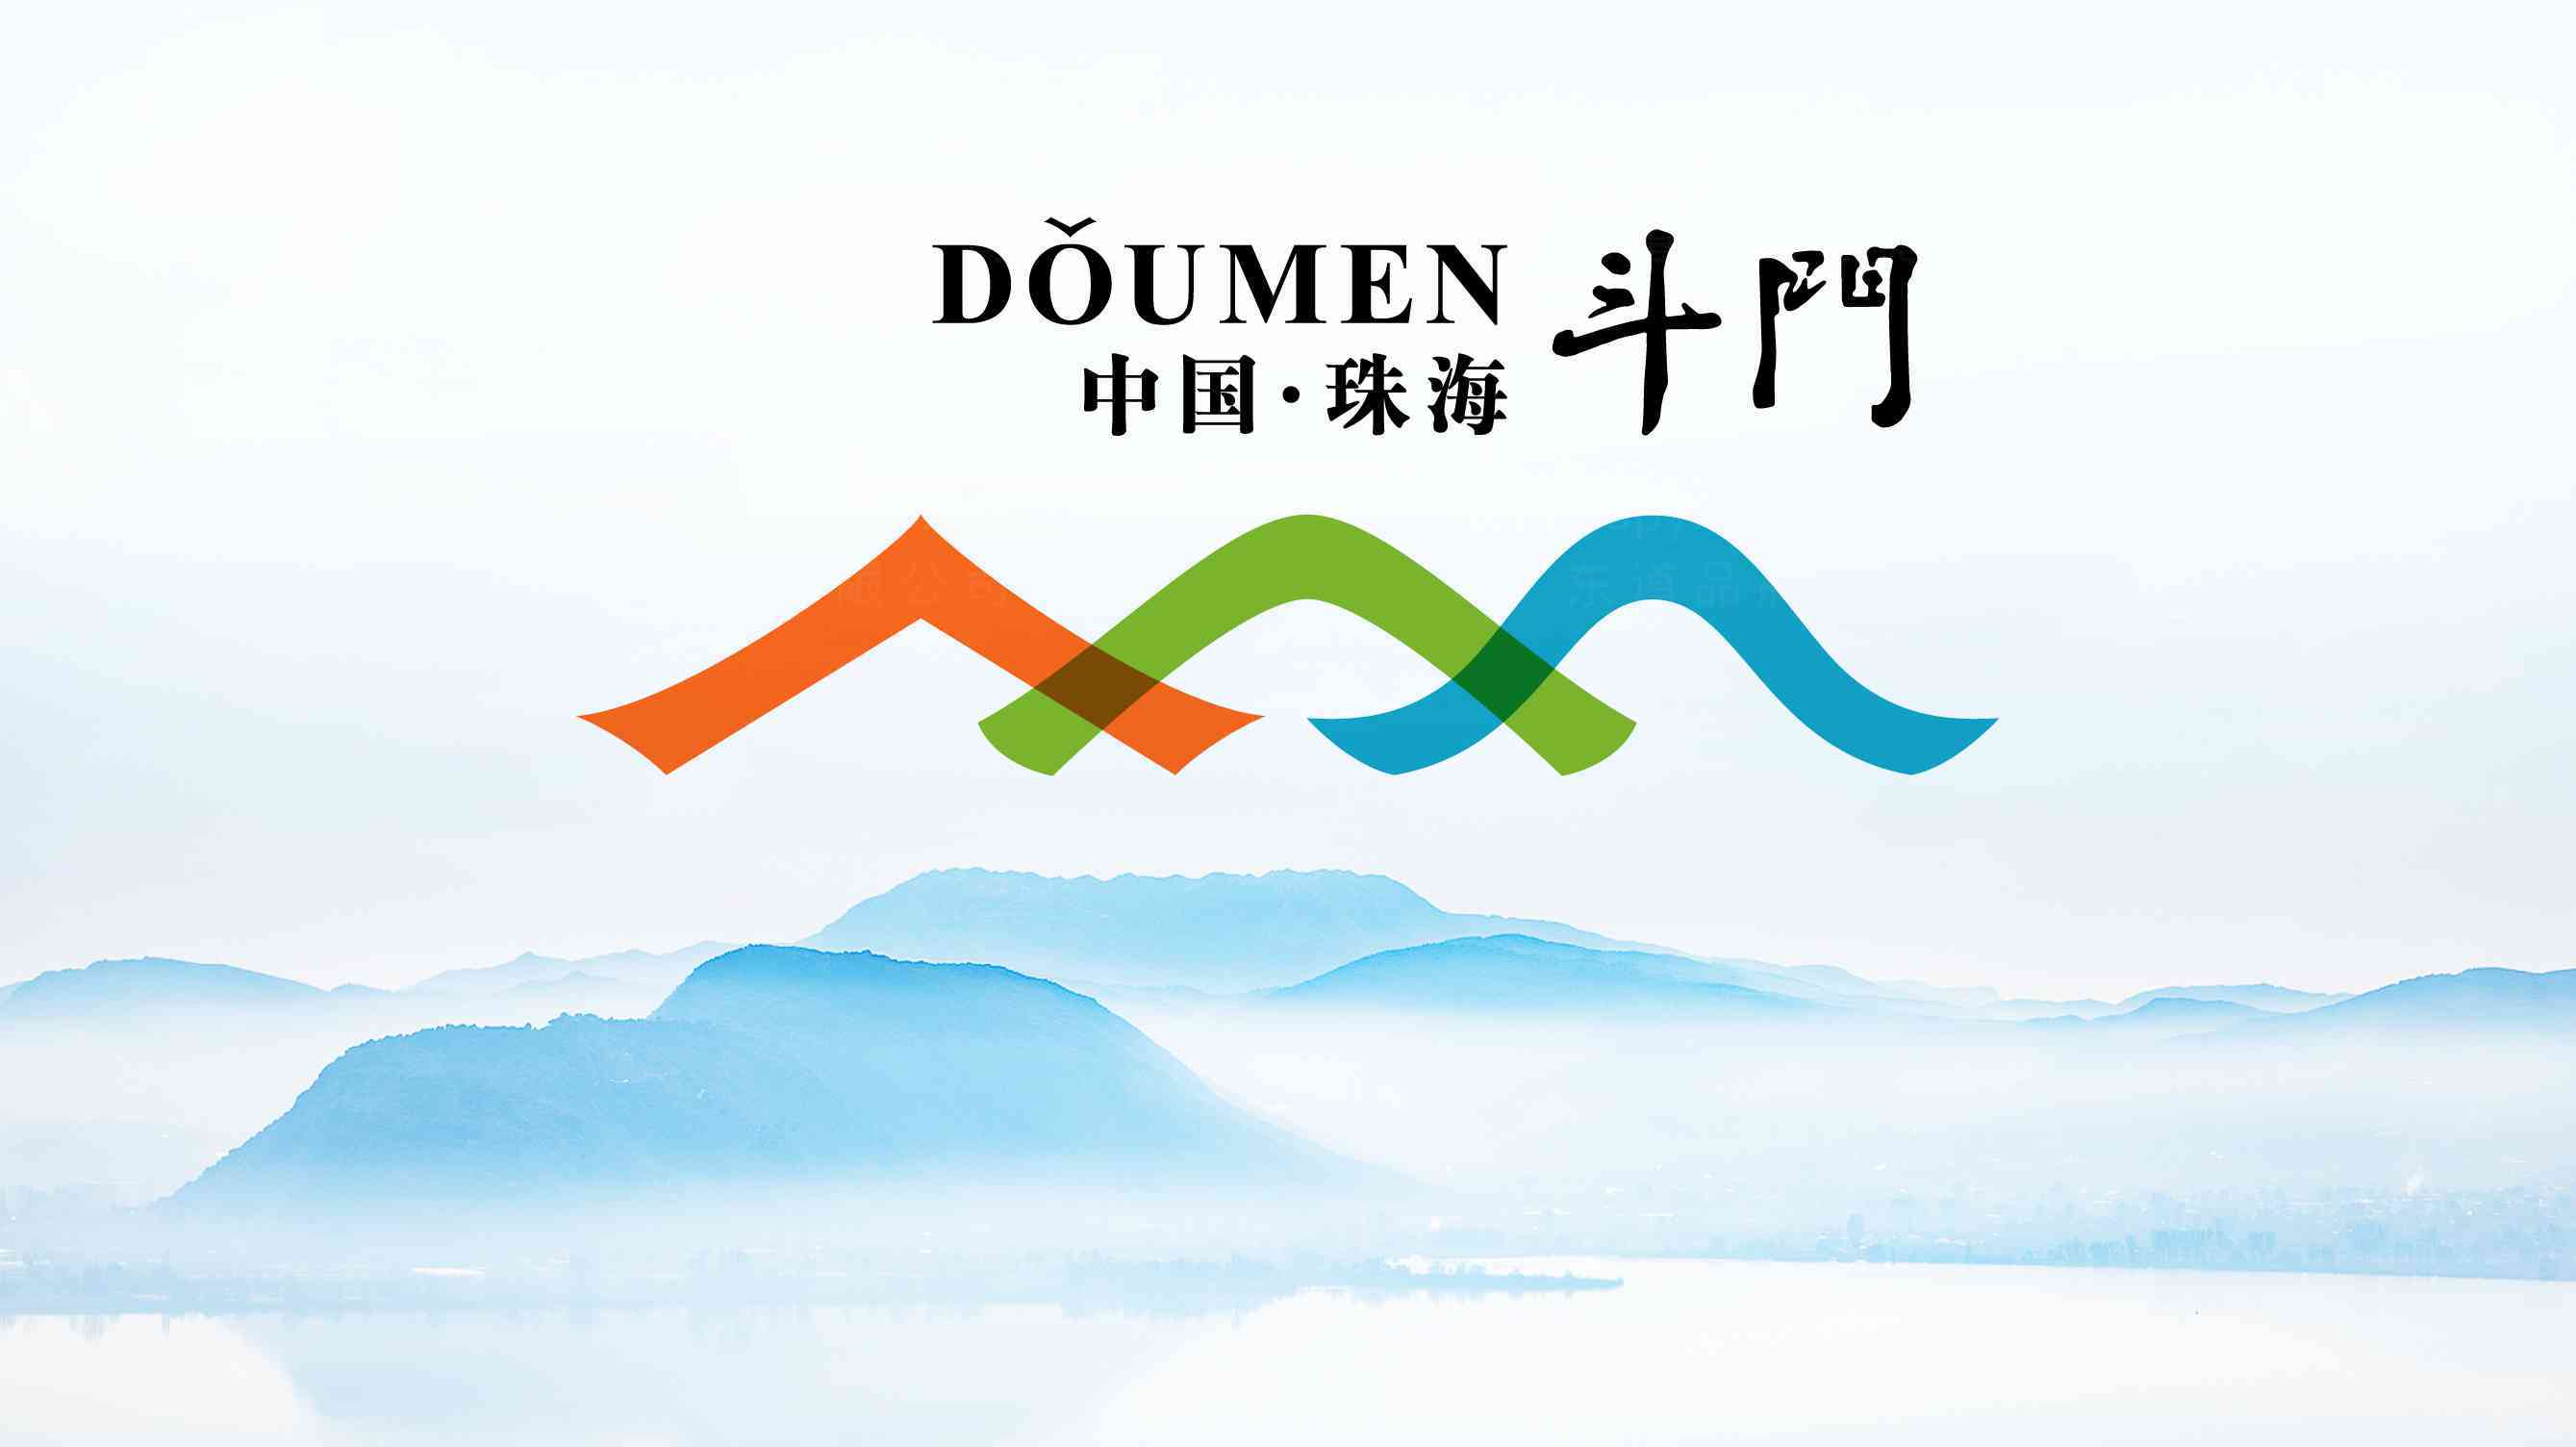 斗門旅游局logo設計圖片素材